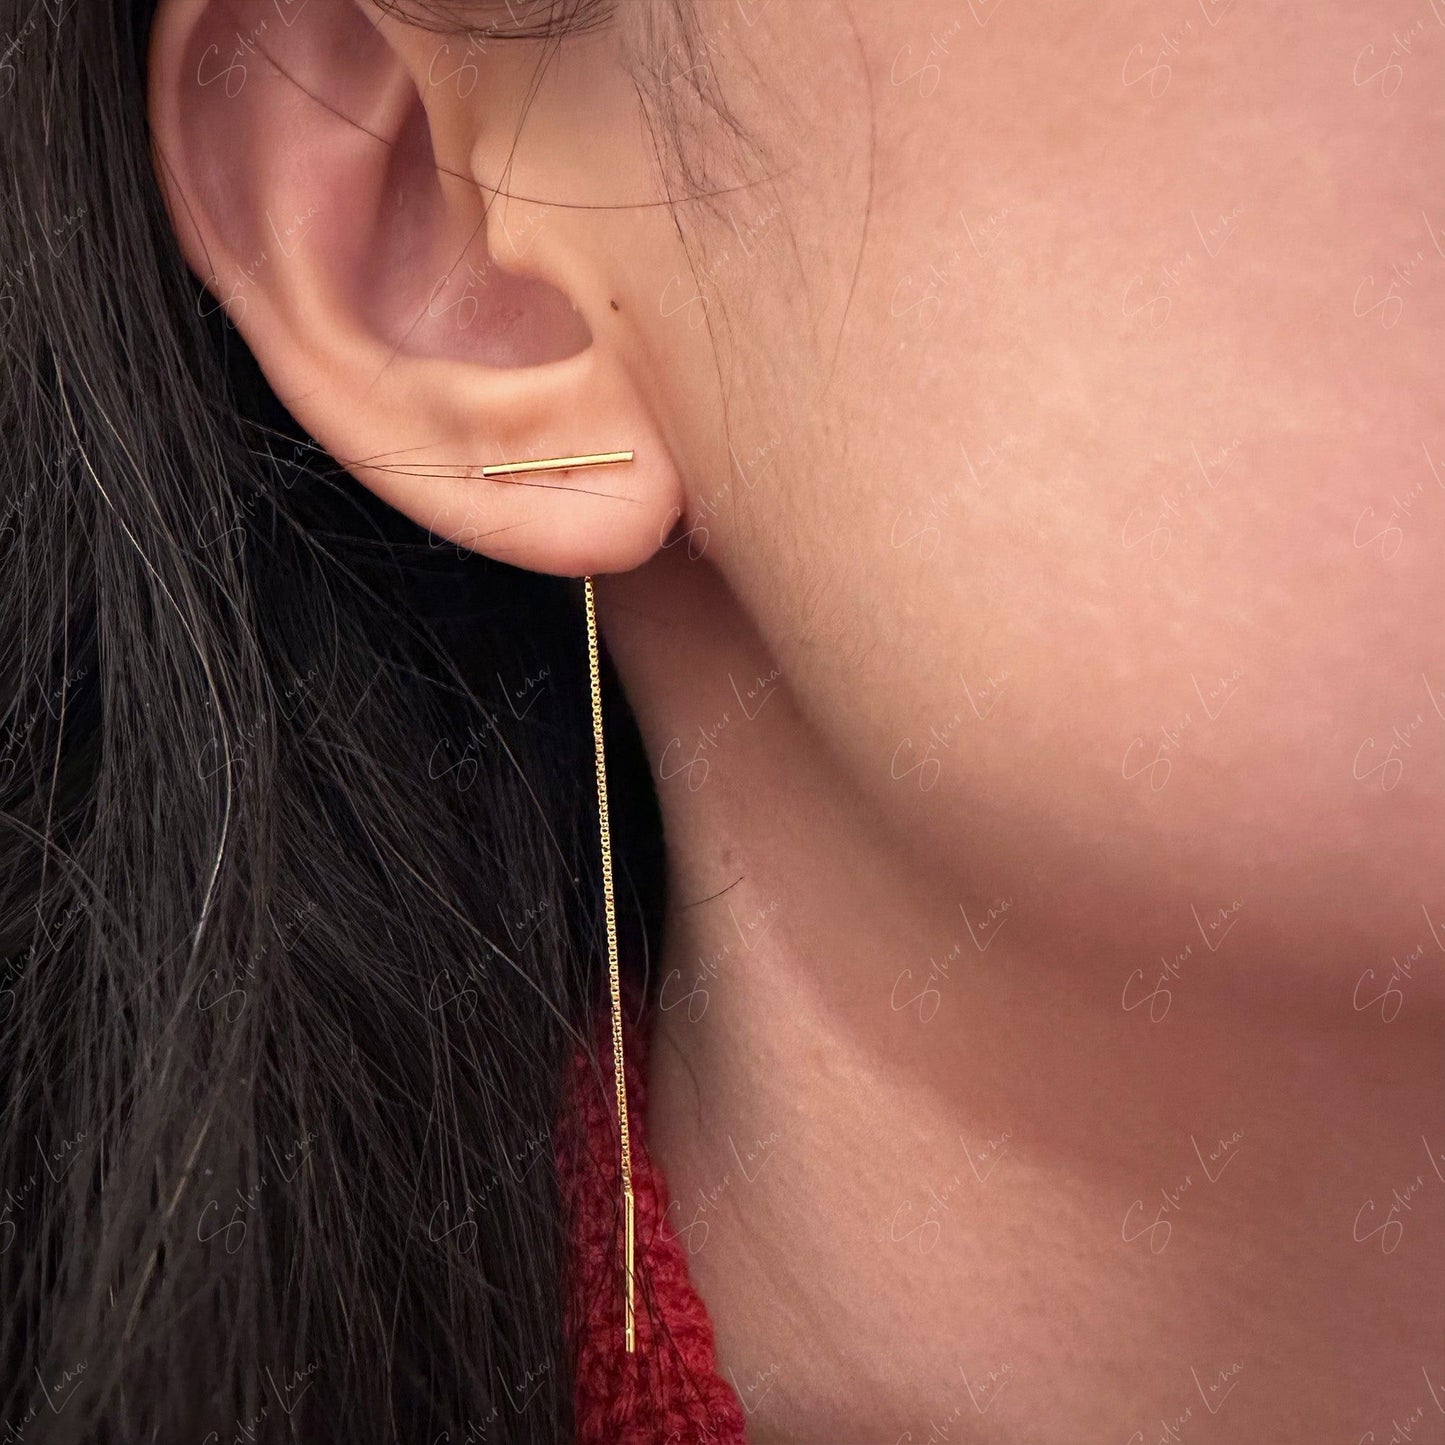 stick threader earrings